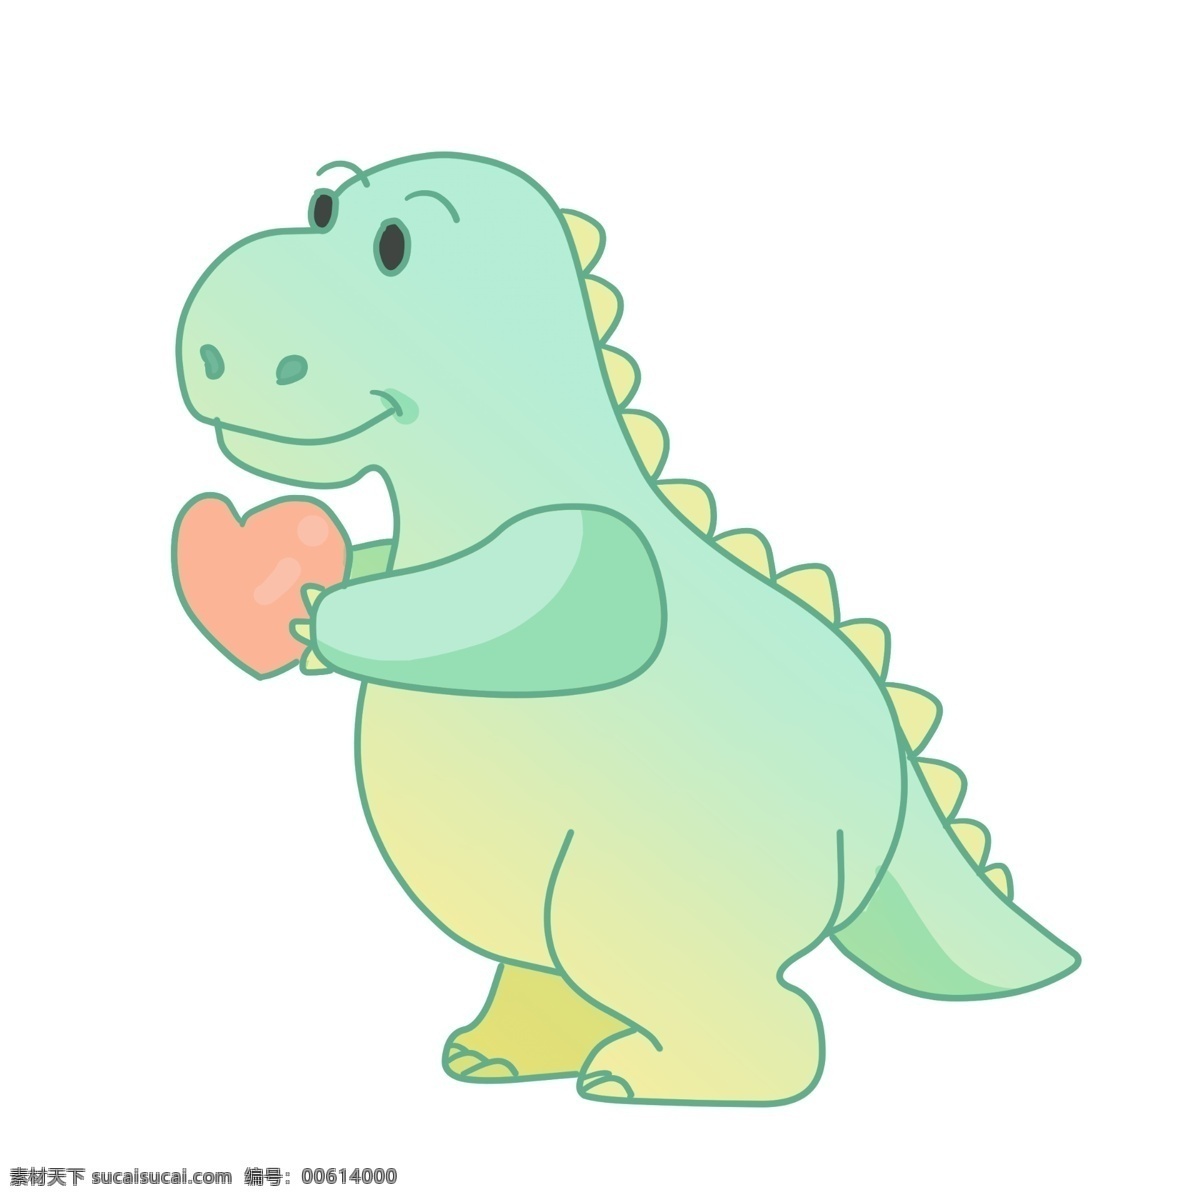 心 小 恐龙 插画 蓝色的恐龙 卡通插画 恐龙插画 动物插画 白垩纪恐龙 恐龙玩具 比心的恐龙